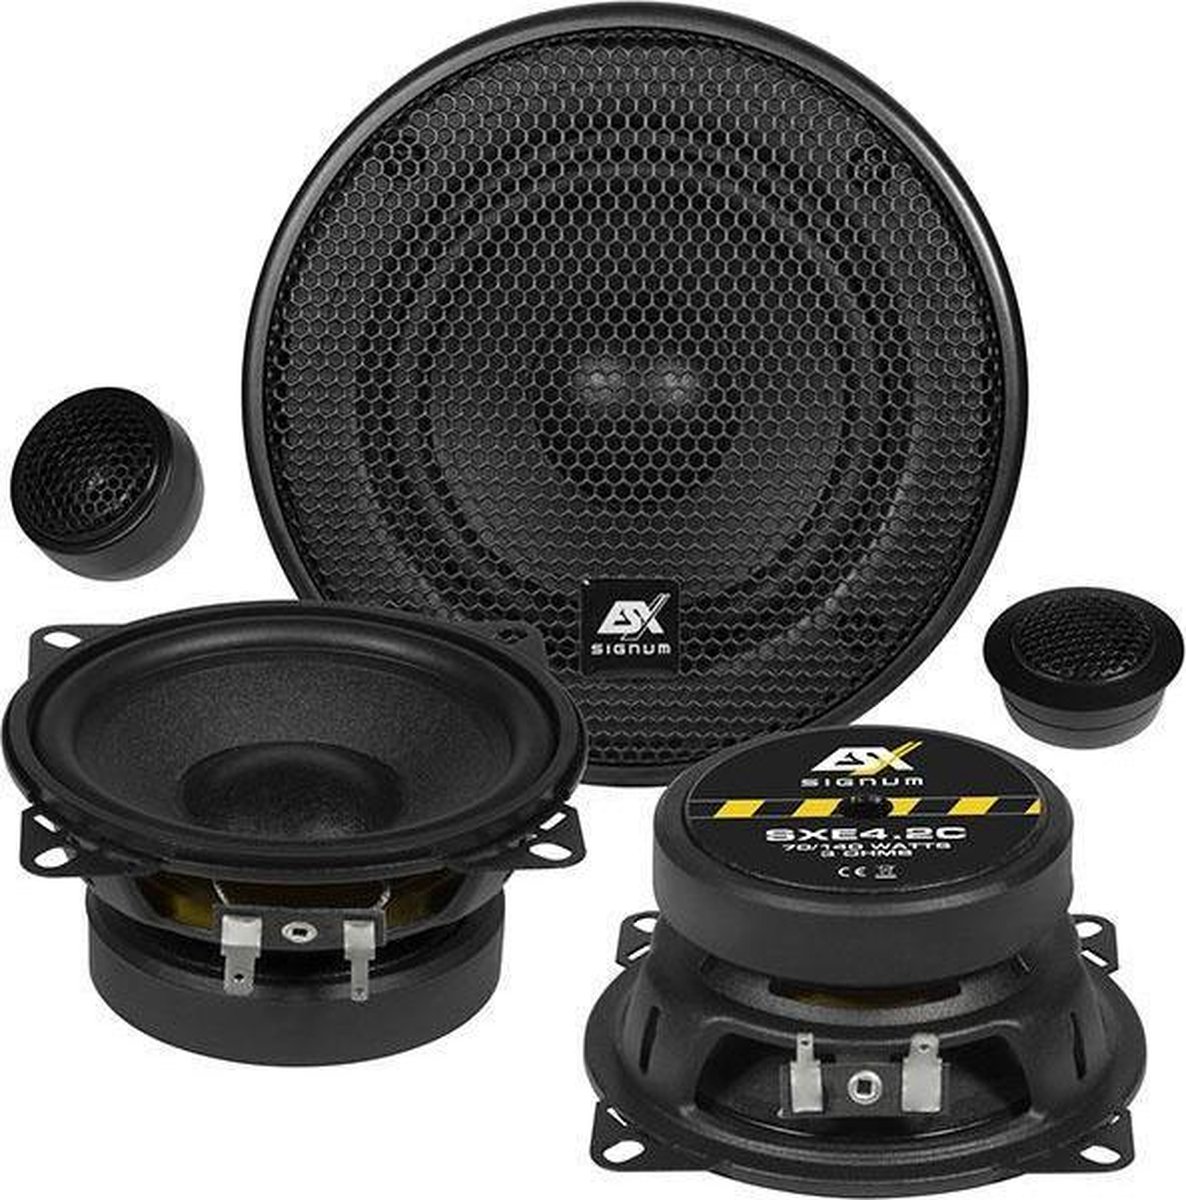 ESX SXE4.2C 10cm composet flat speakers